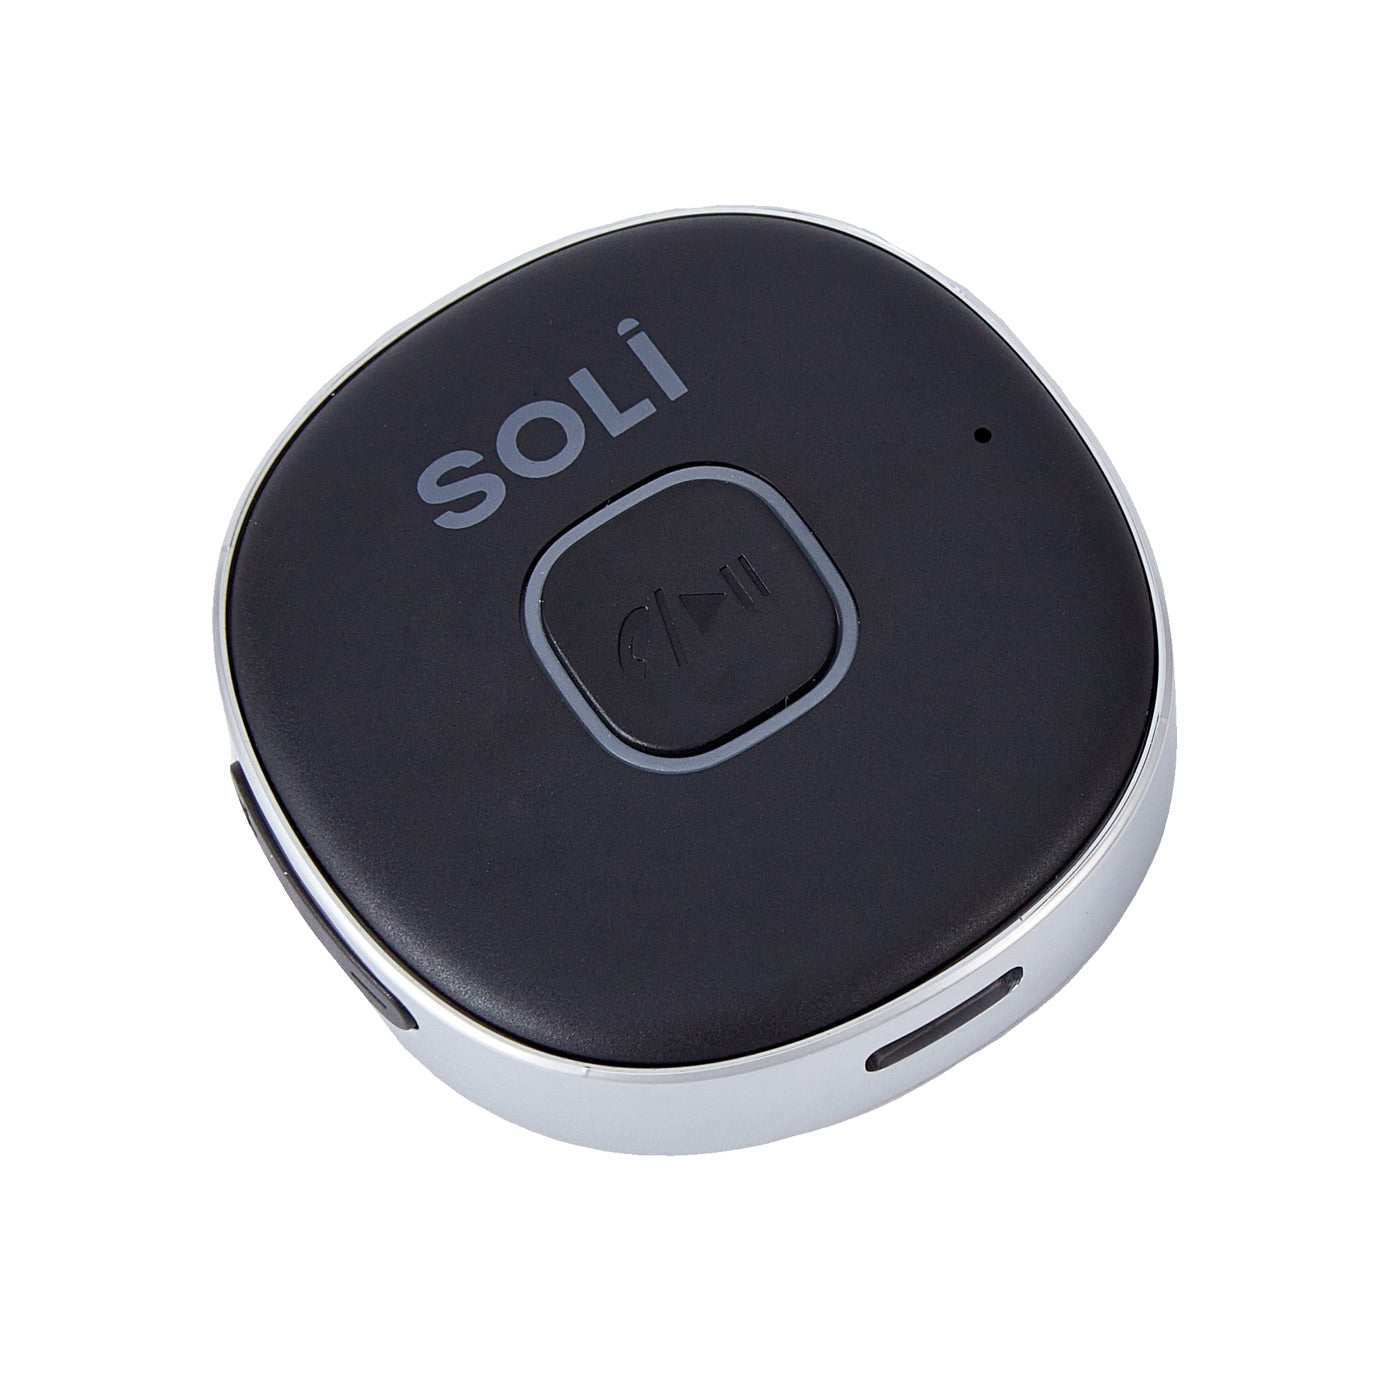 Soli Bluetooth Audio Receiver